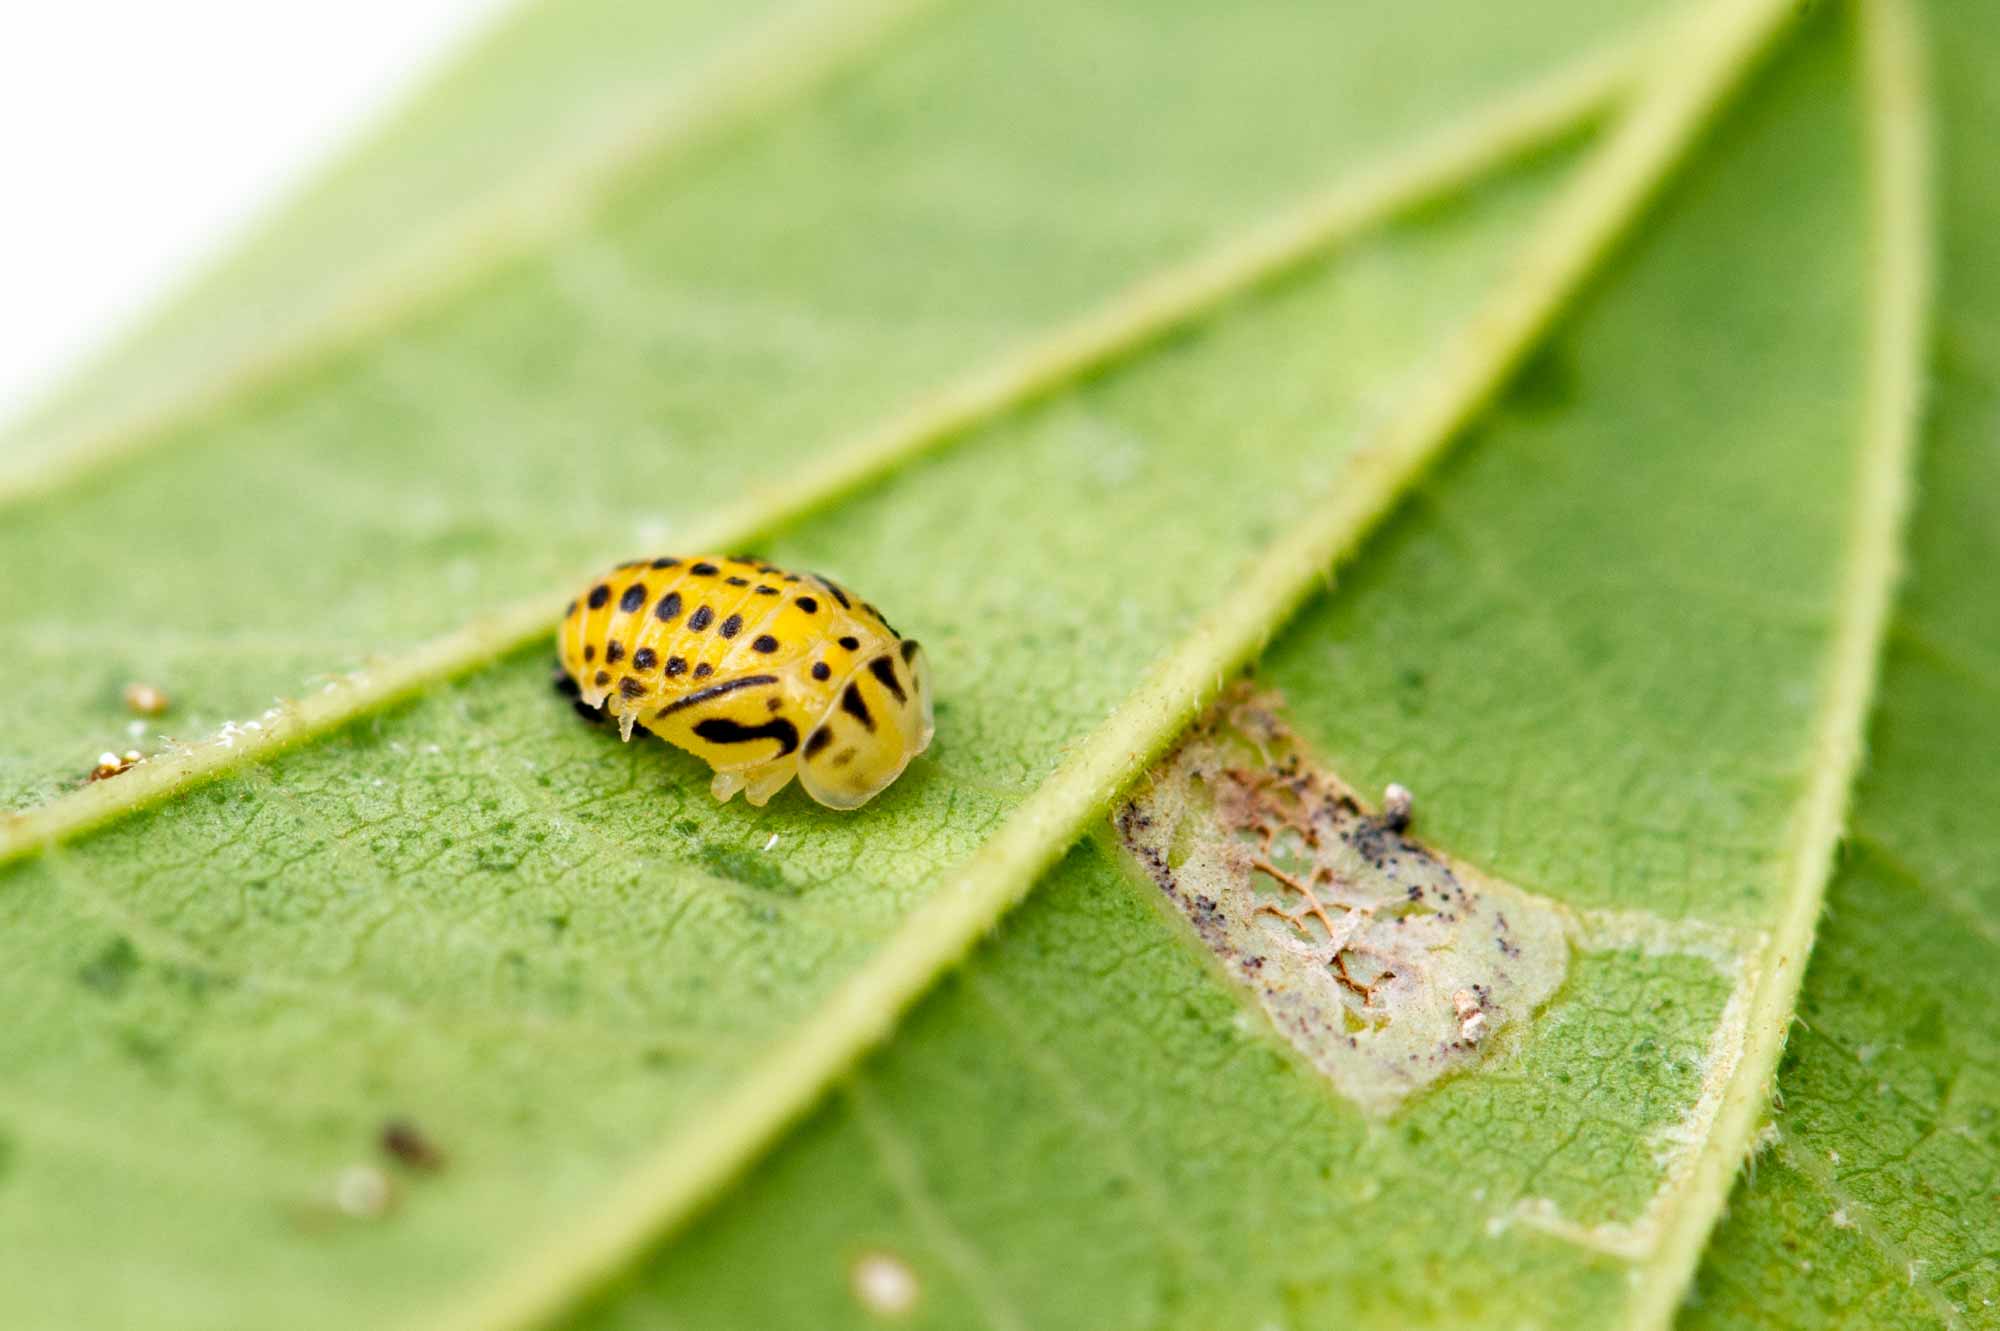 キイロテントウは菌を食べるテントウムシ 虫の写真と生態なら昆虫写真図鑑 ムシミル